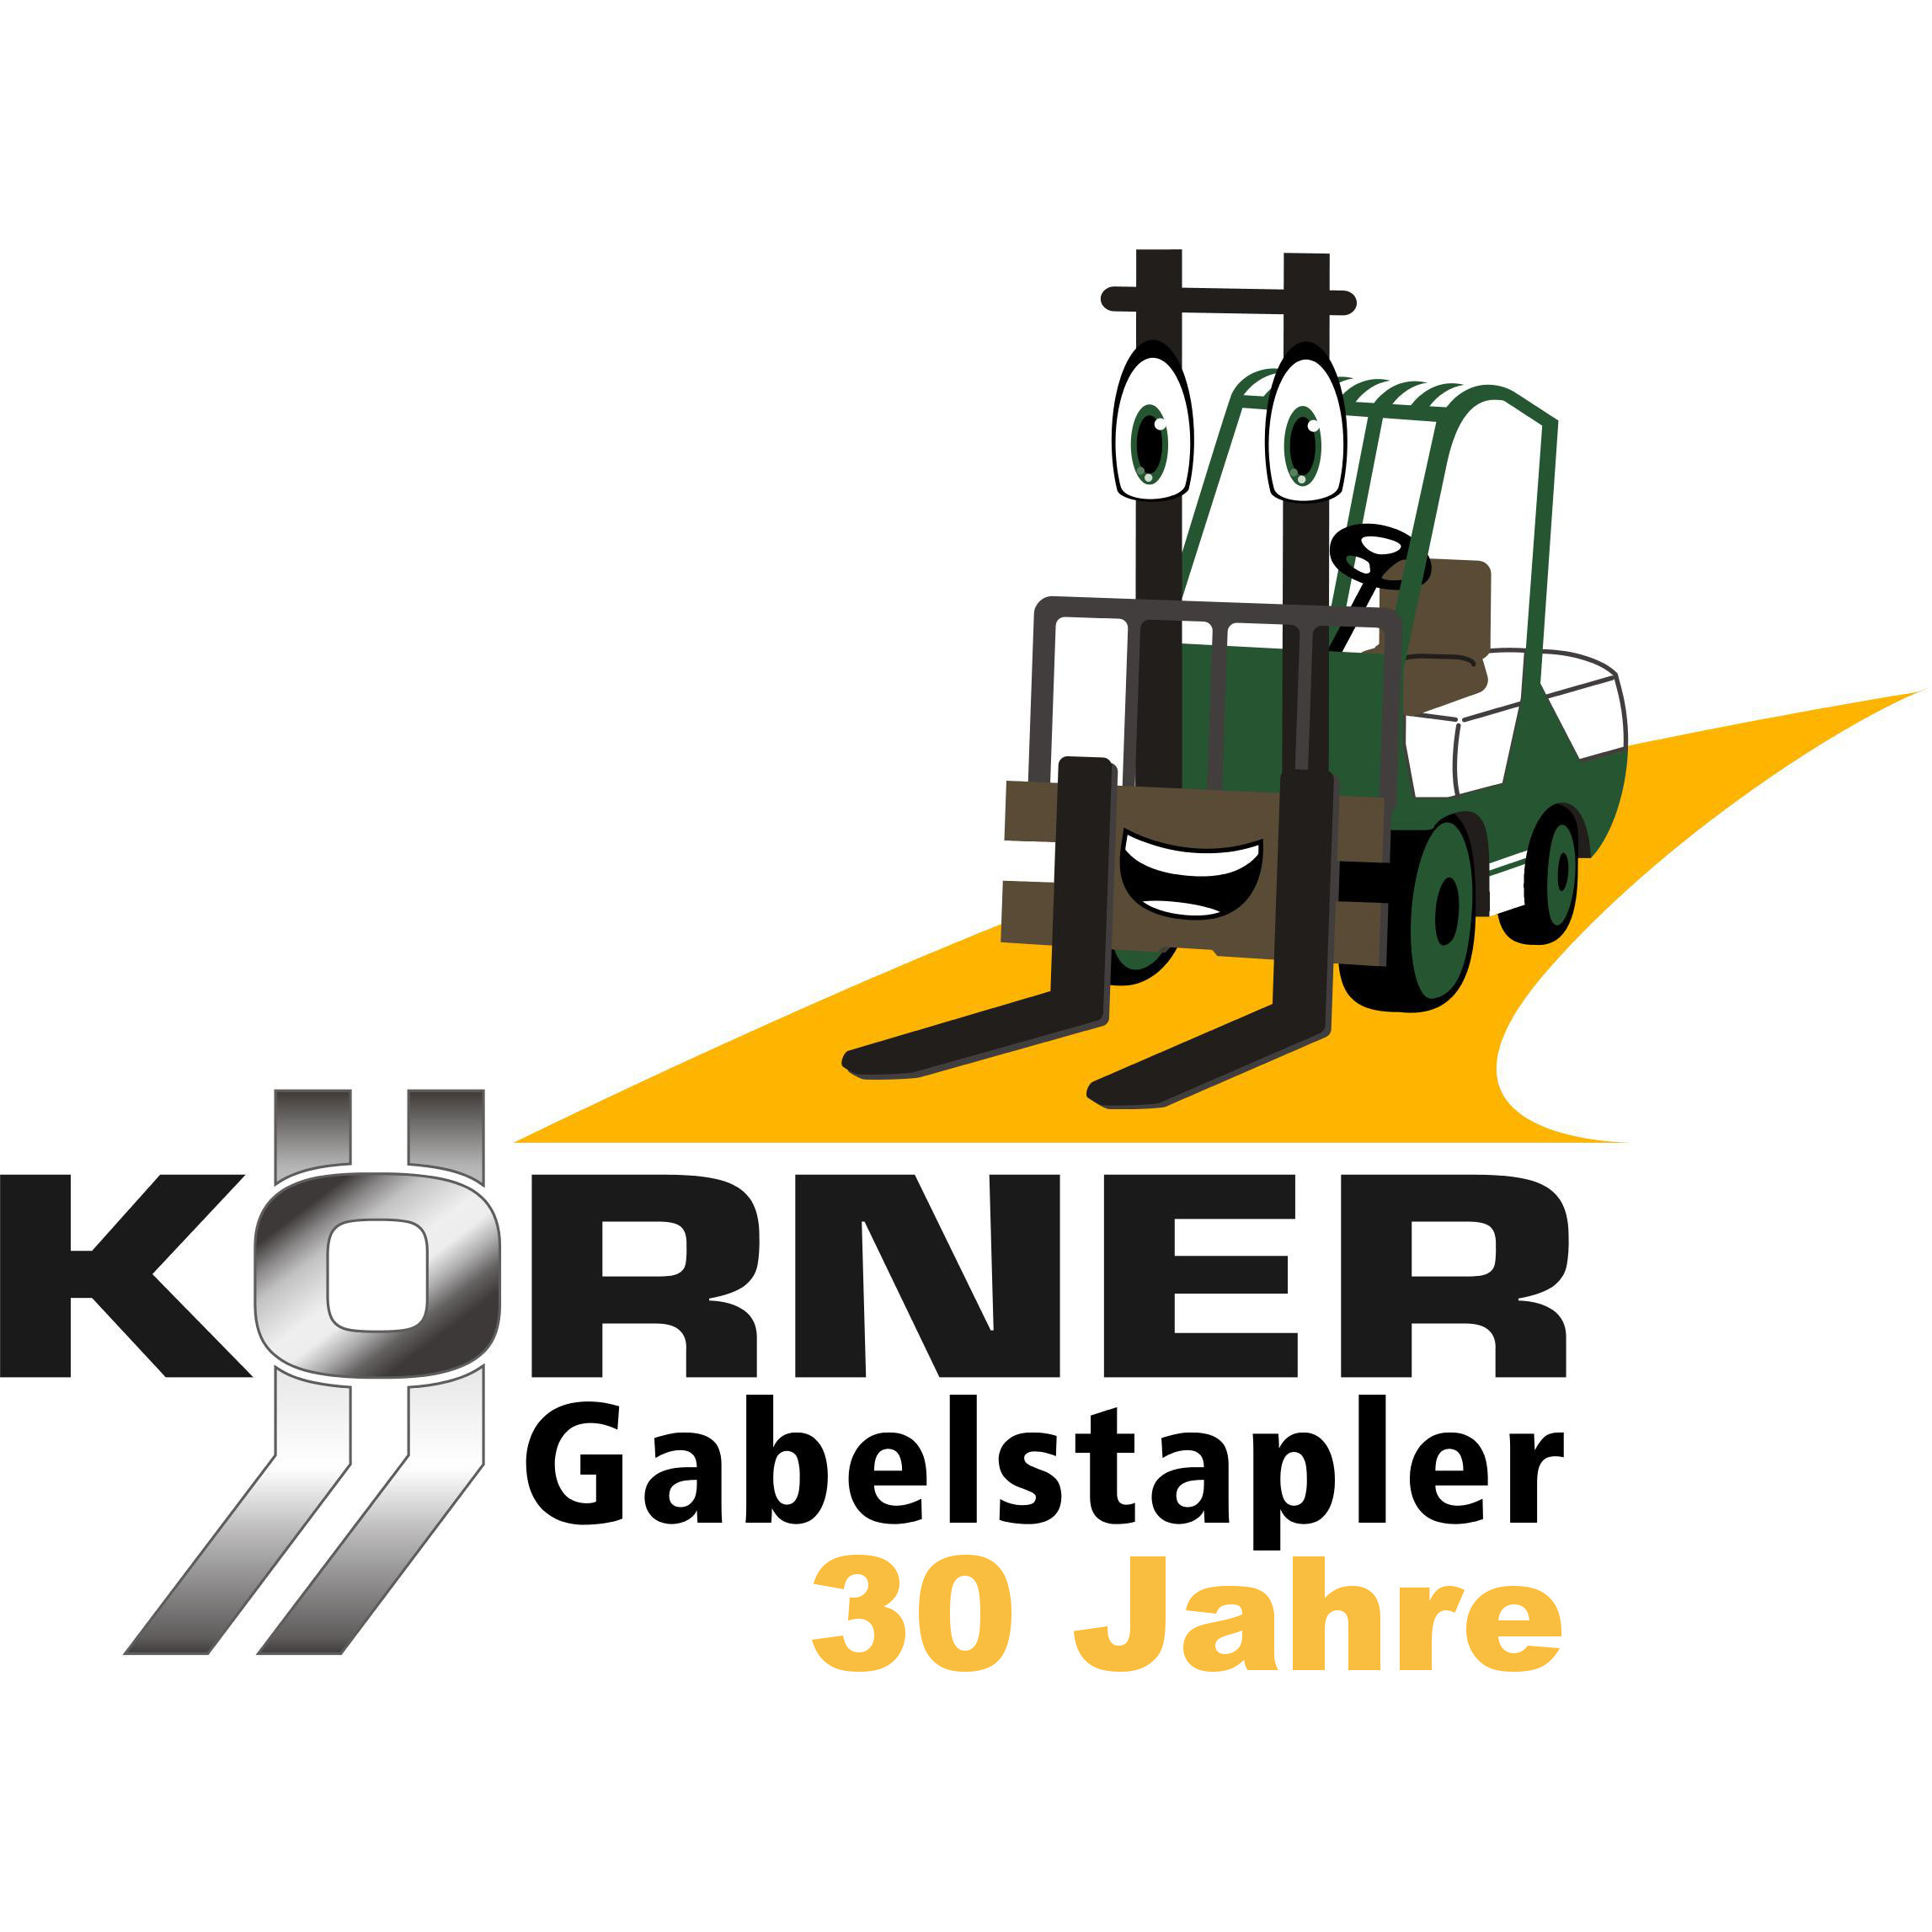 Körner Gabelstapler GmbH